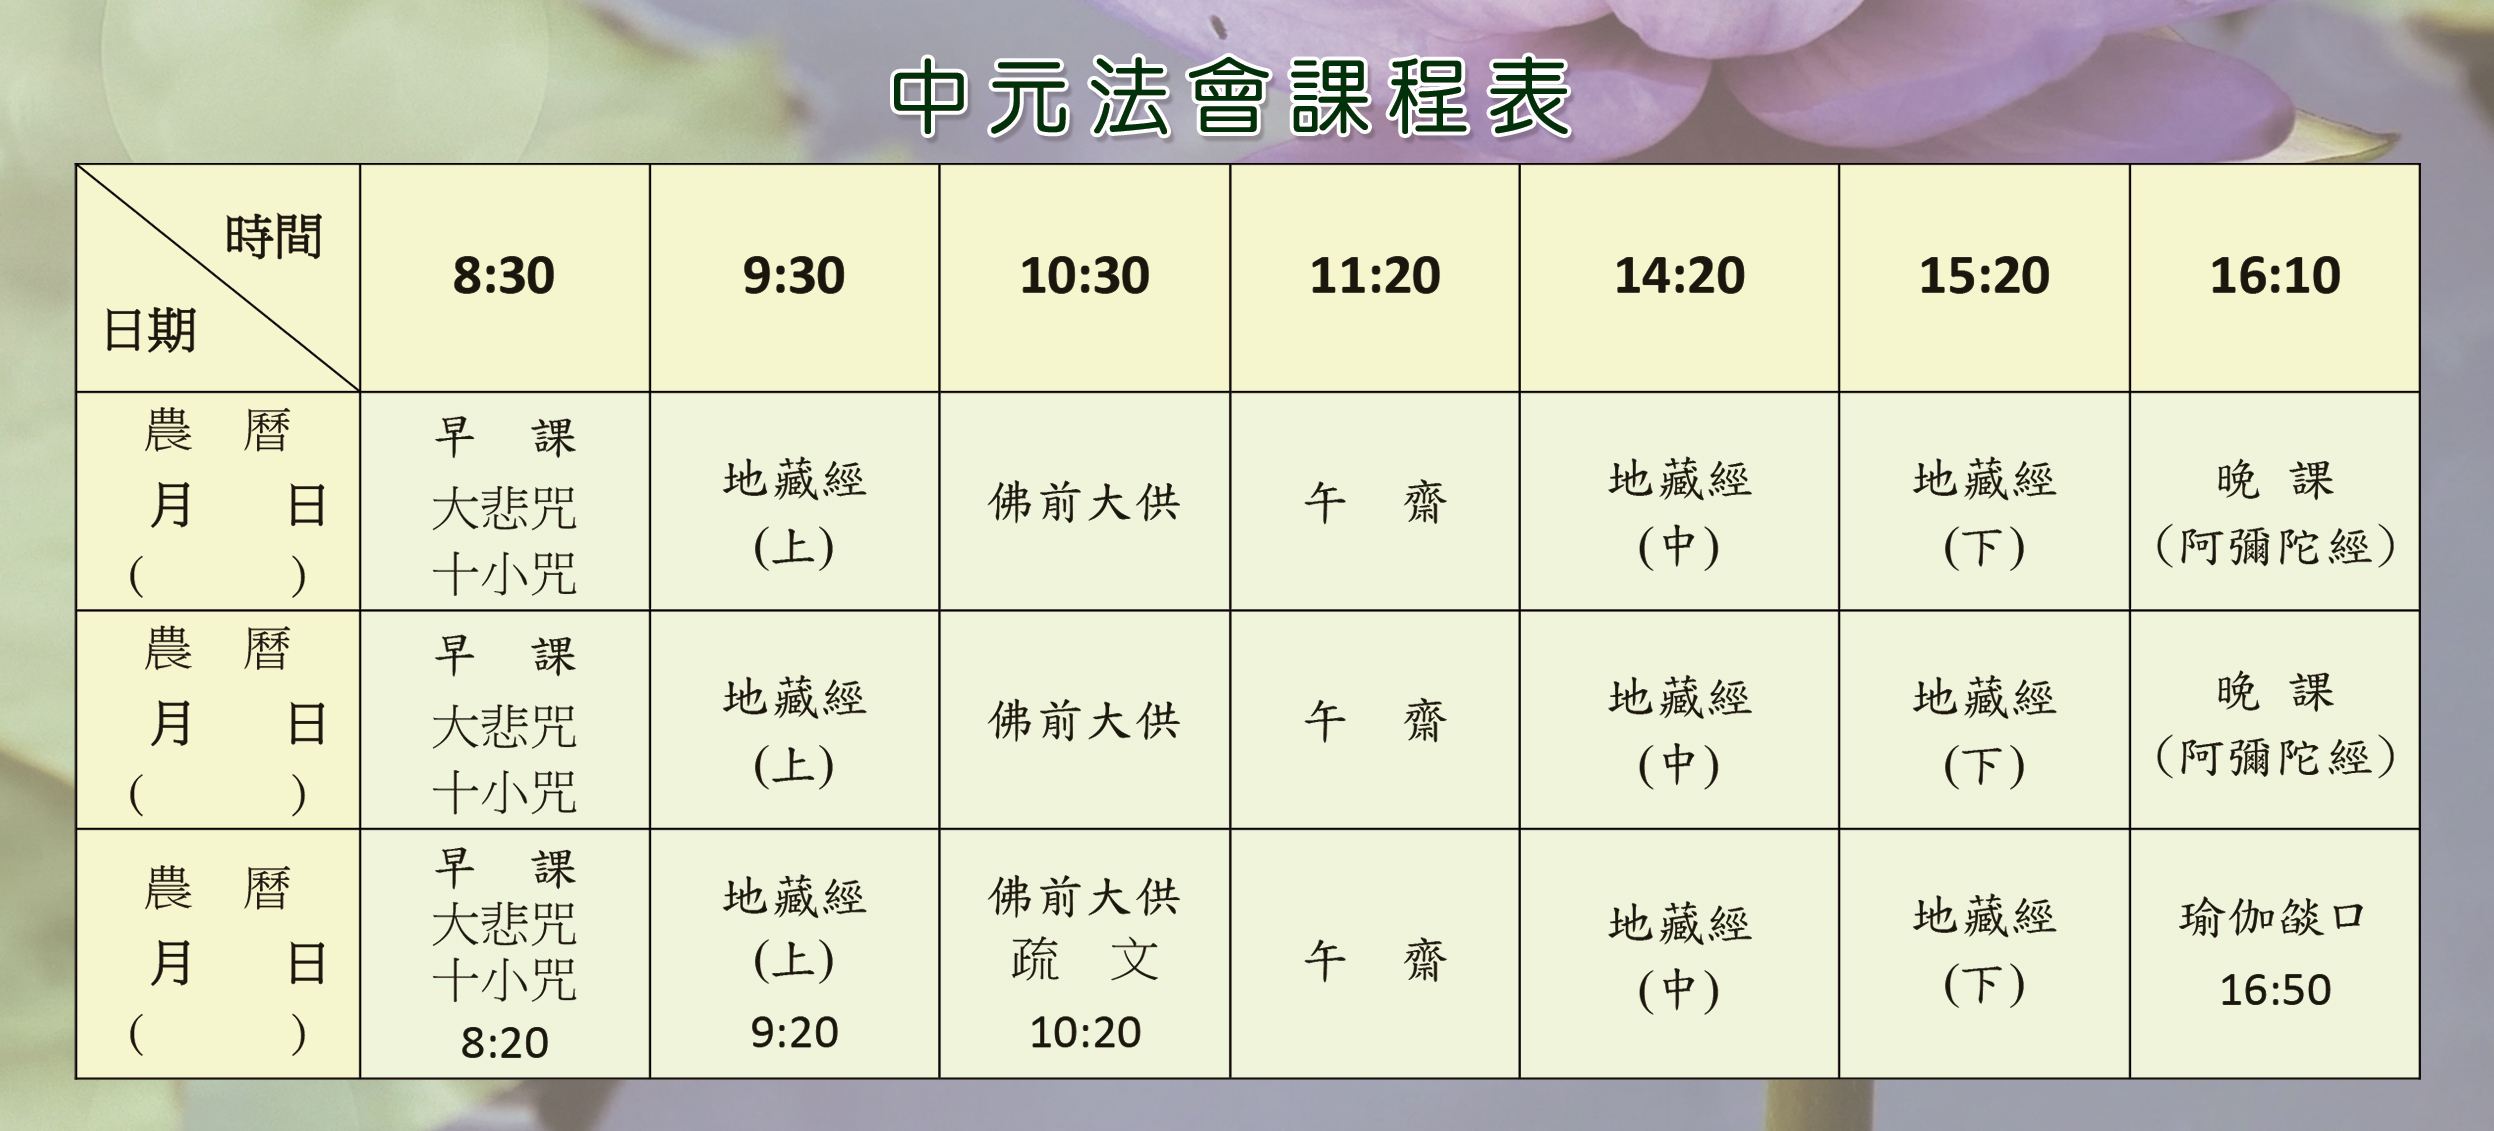 中元法會課程表